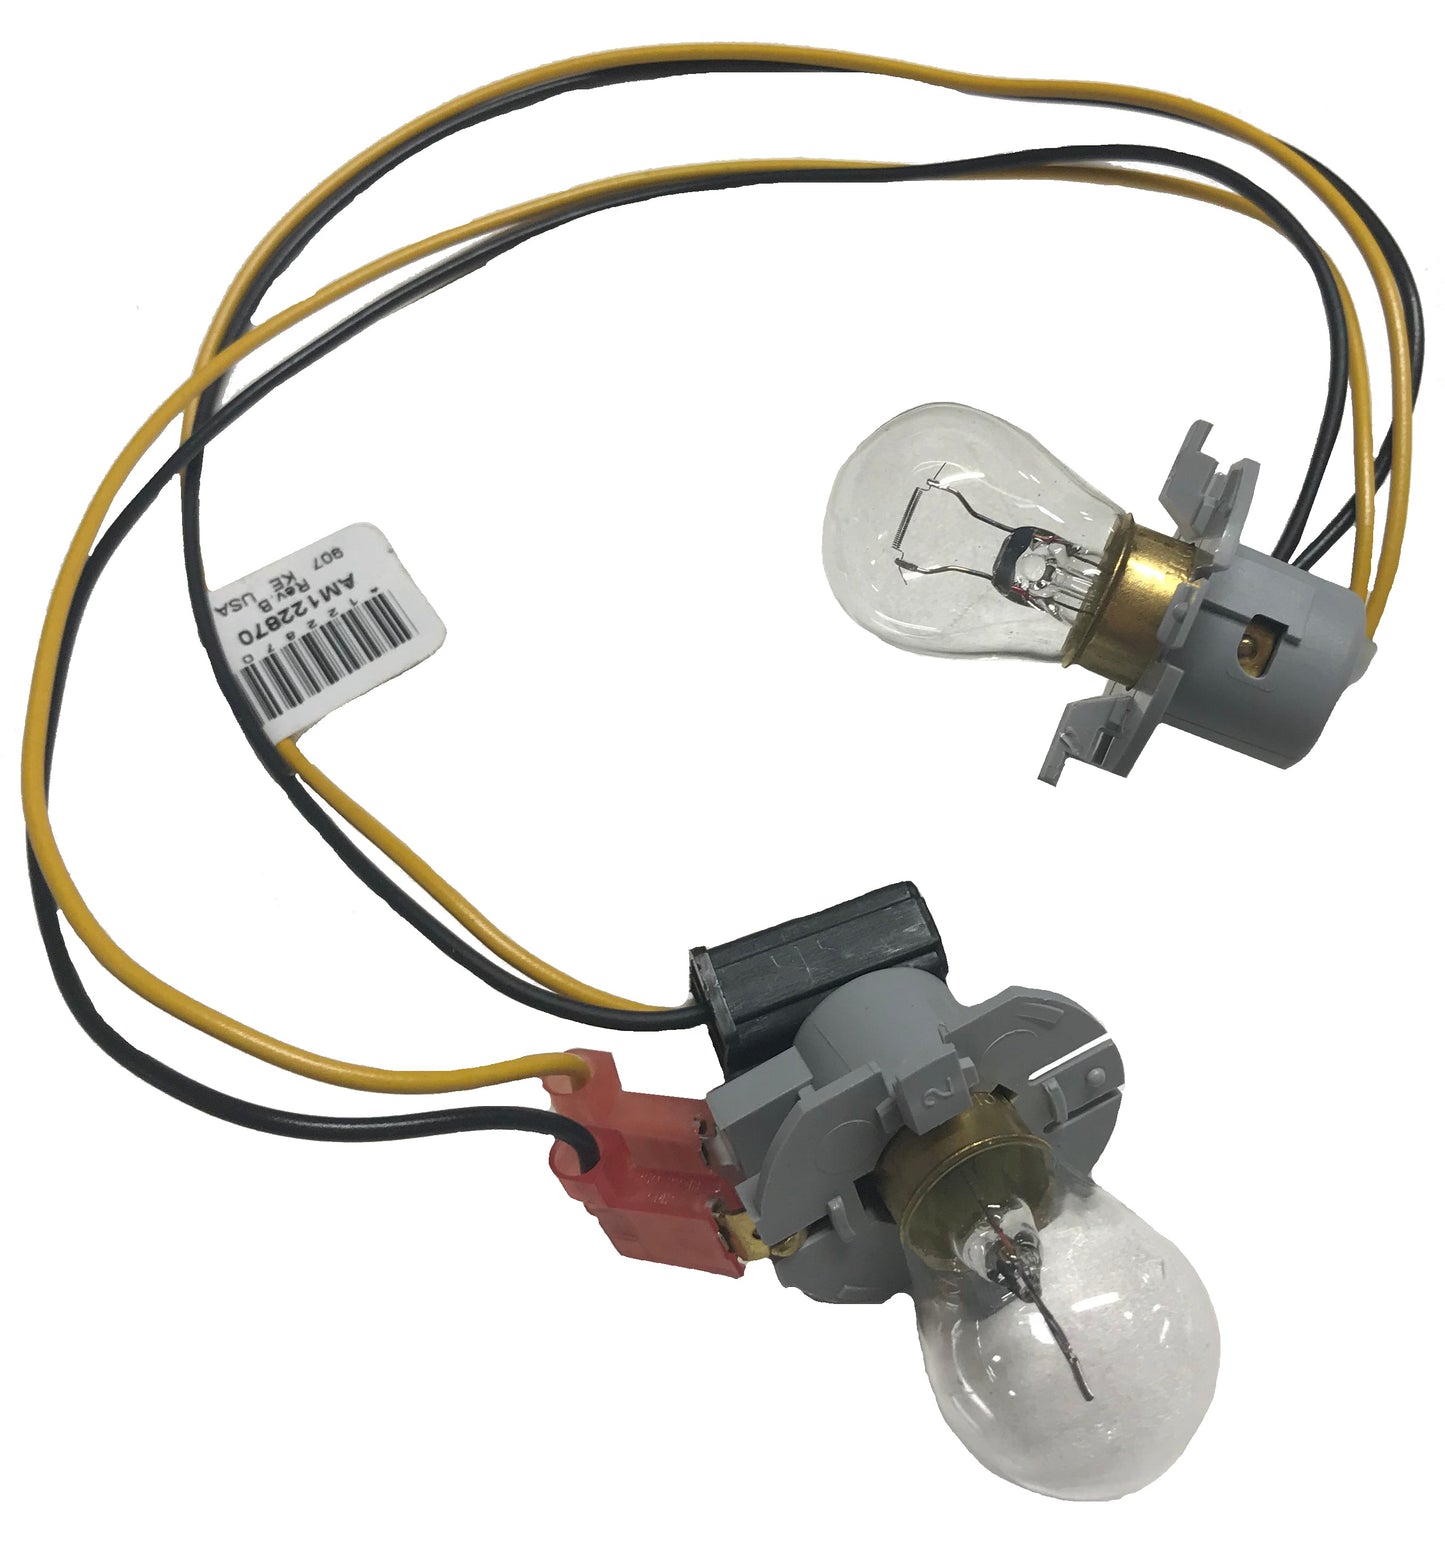 John Deere Original Equipment Wiring Harness - AM122870